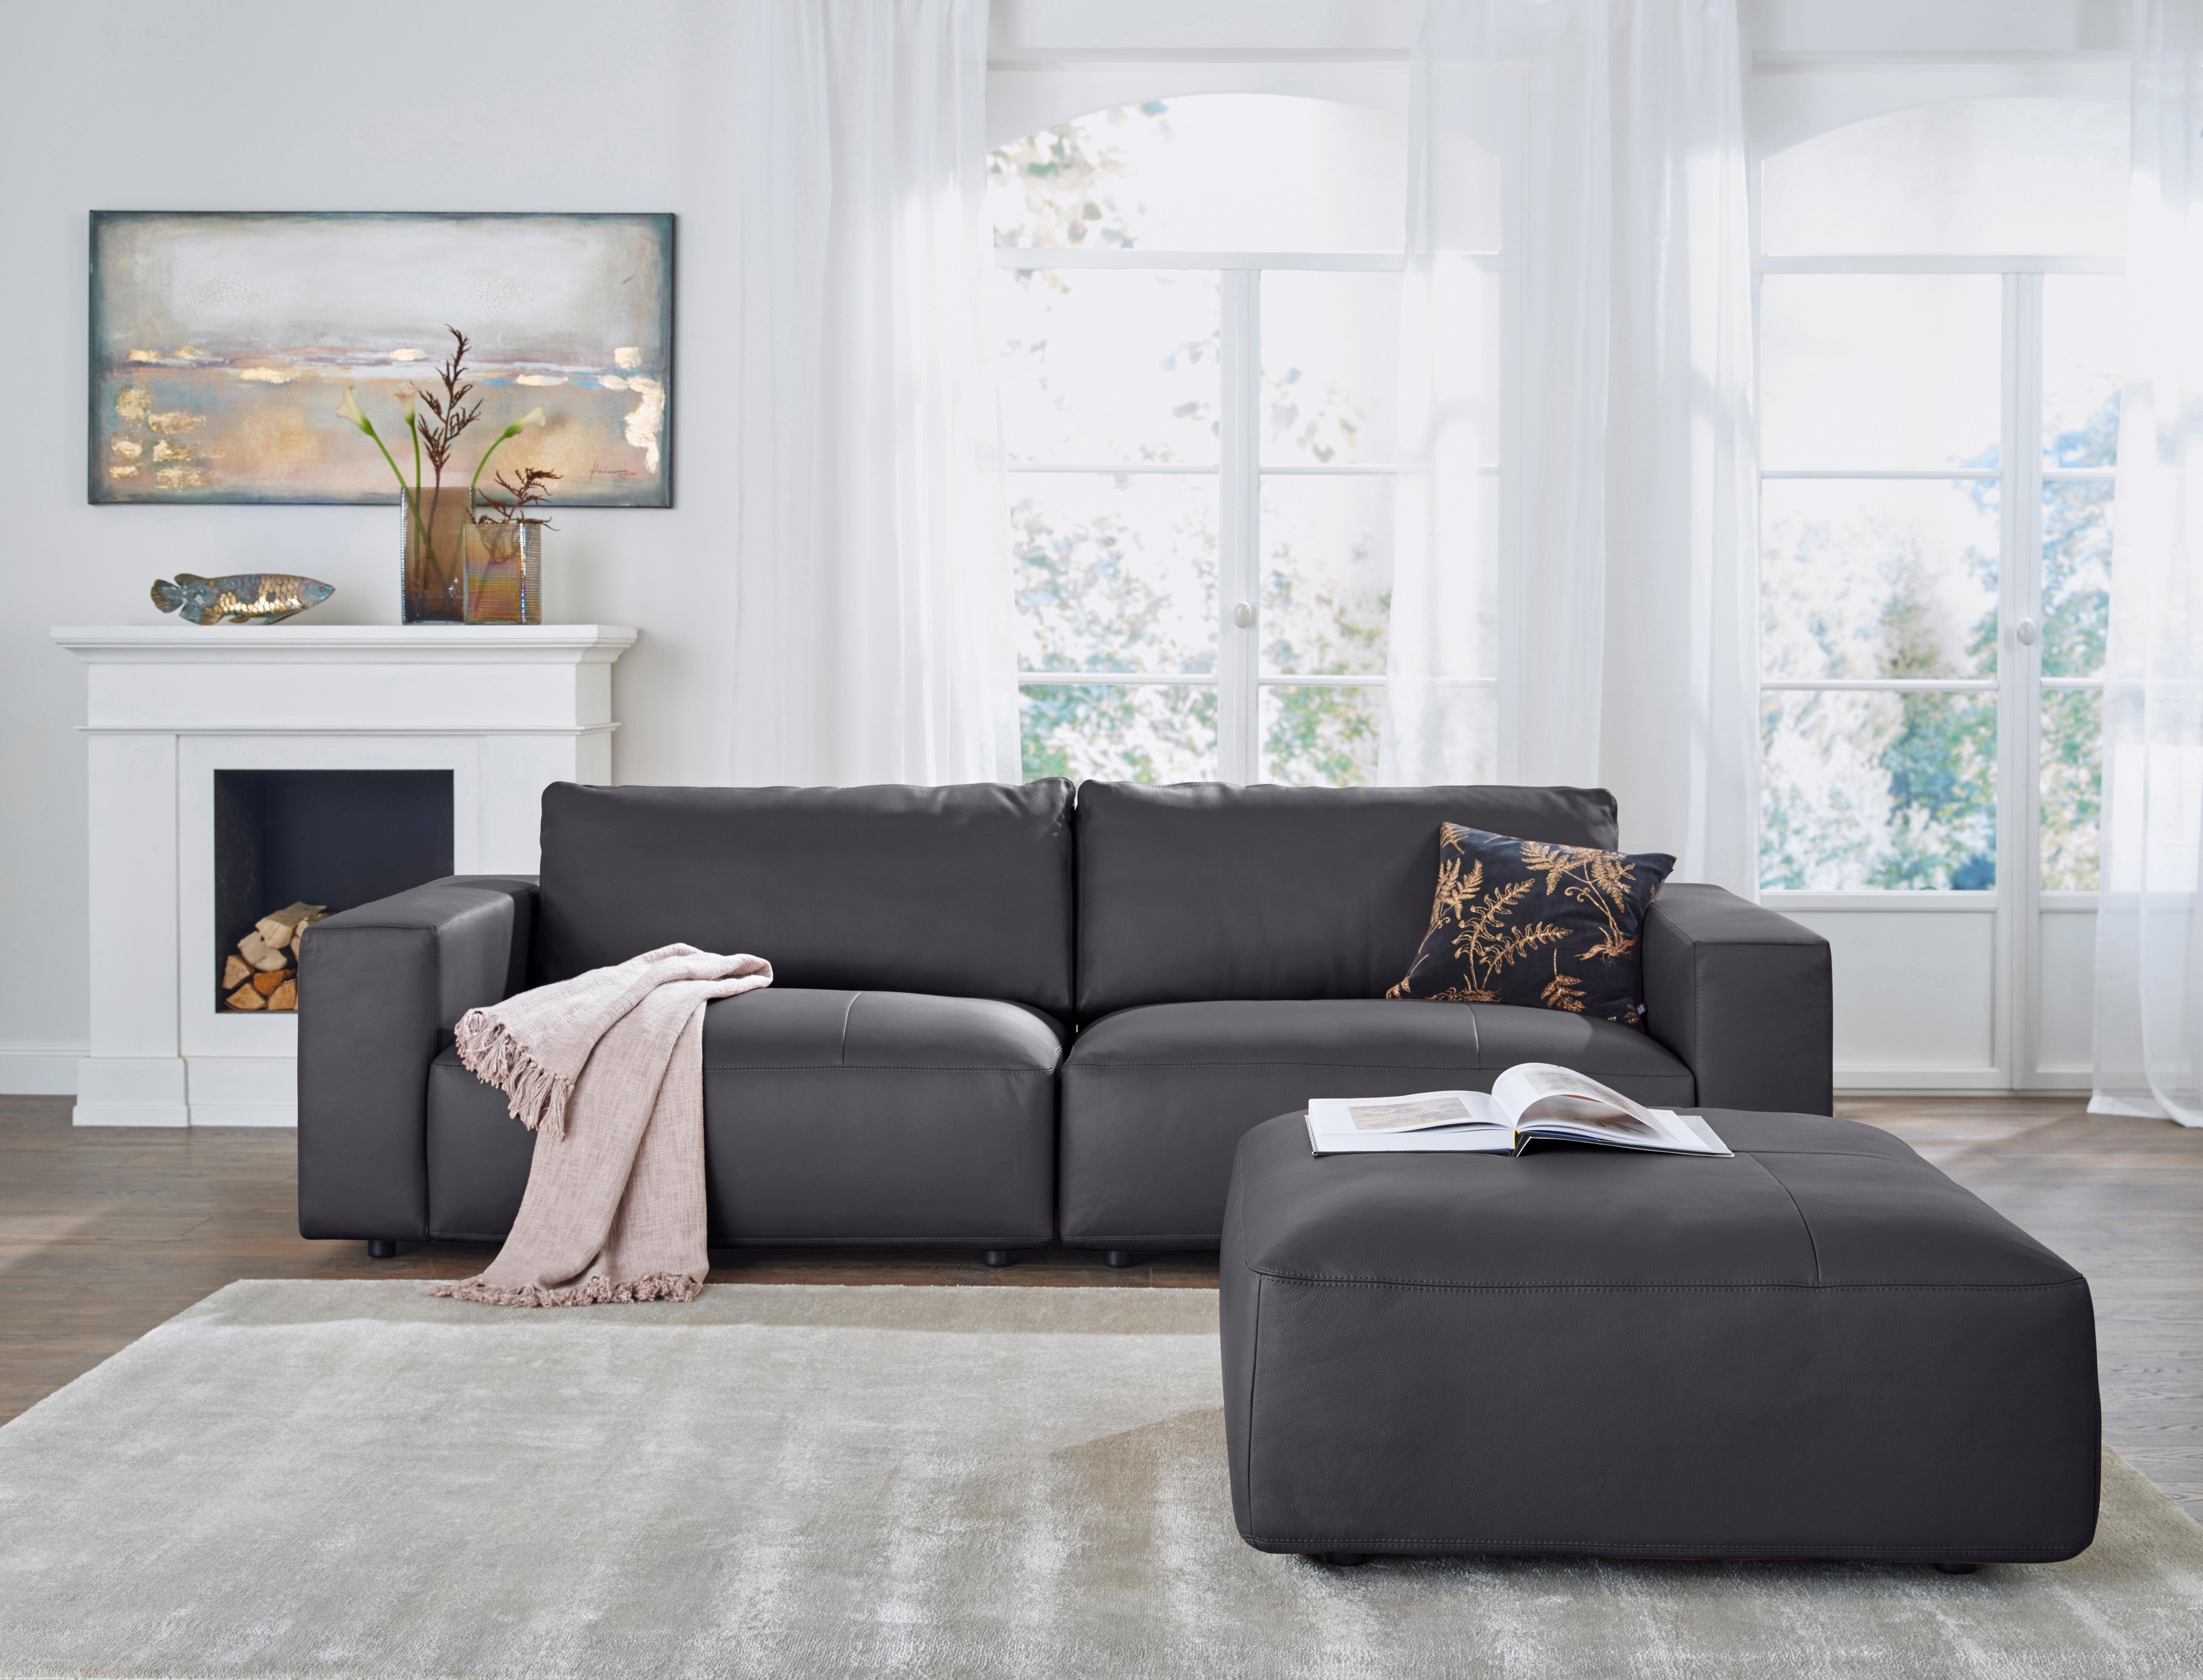 Qualitäten by Nähten, Big-Sofa in unterschiedlichen vielen 4 GALLERY M 3-Sitzer branded und LUCIA, Musterring